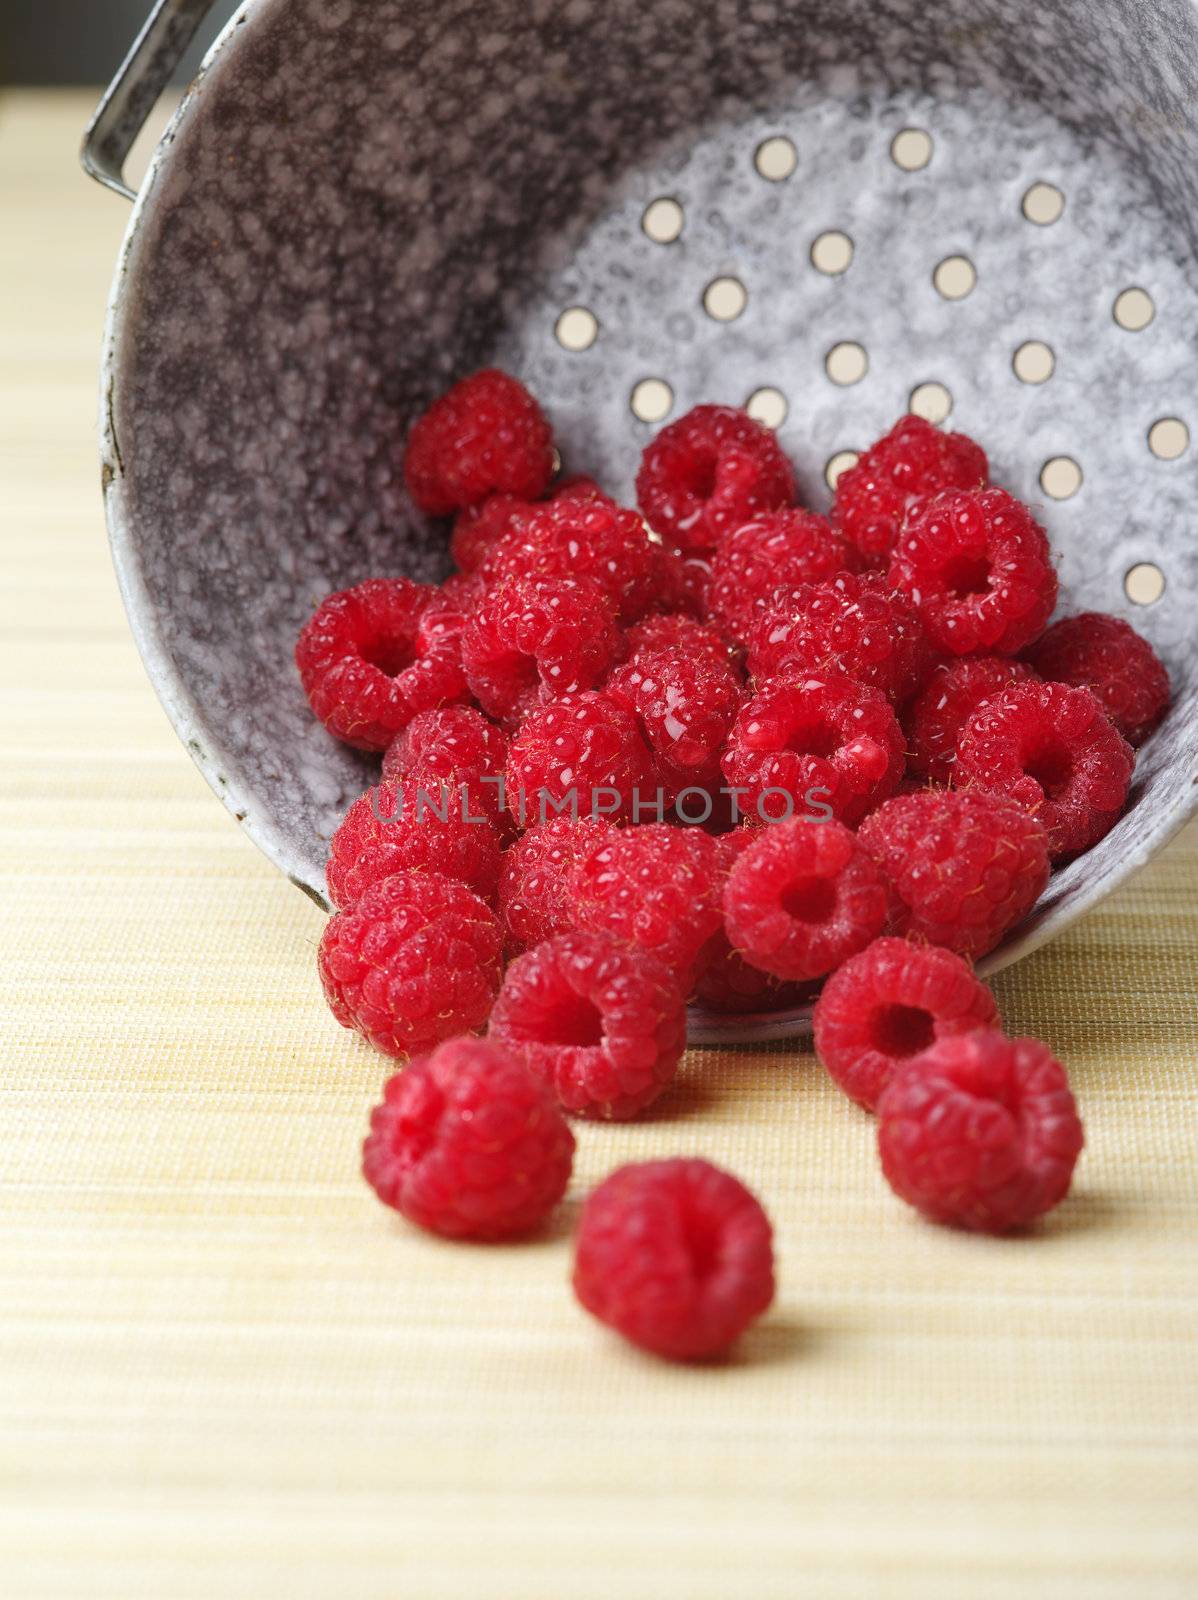 Fresh raspberries by sumners